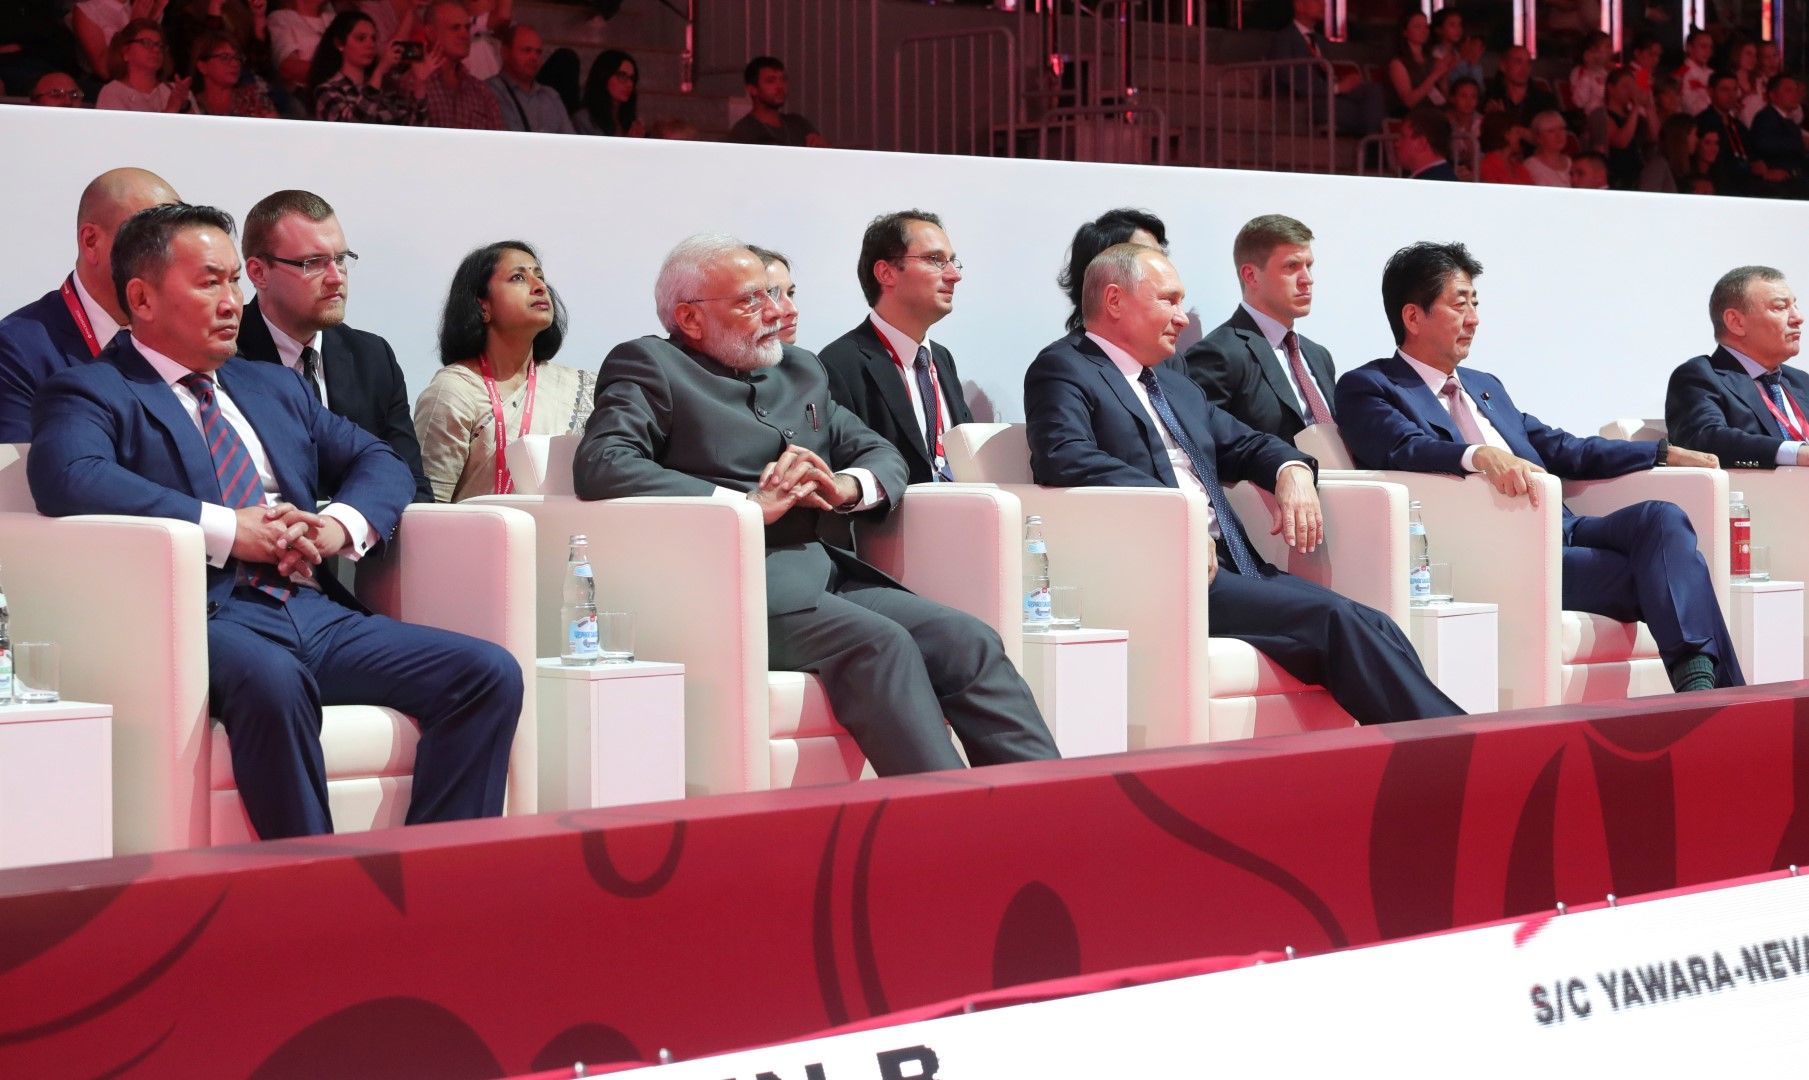 Президентът на Монголия Халтмагийн Батулга, премиерът на Индия нарендра Моди, руският президент Владимир Путин и премиерът на Япония Шиндзо Абе по време на икономическия форум във Владивосток